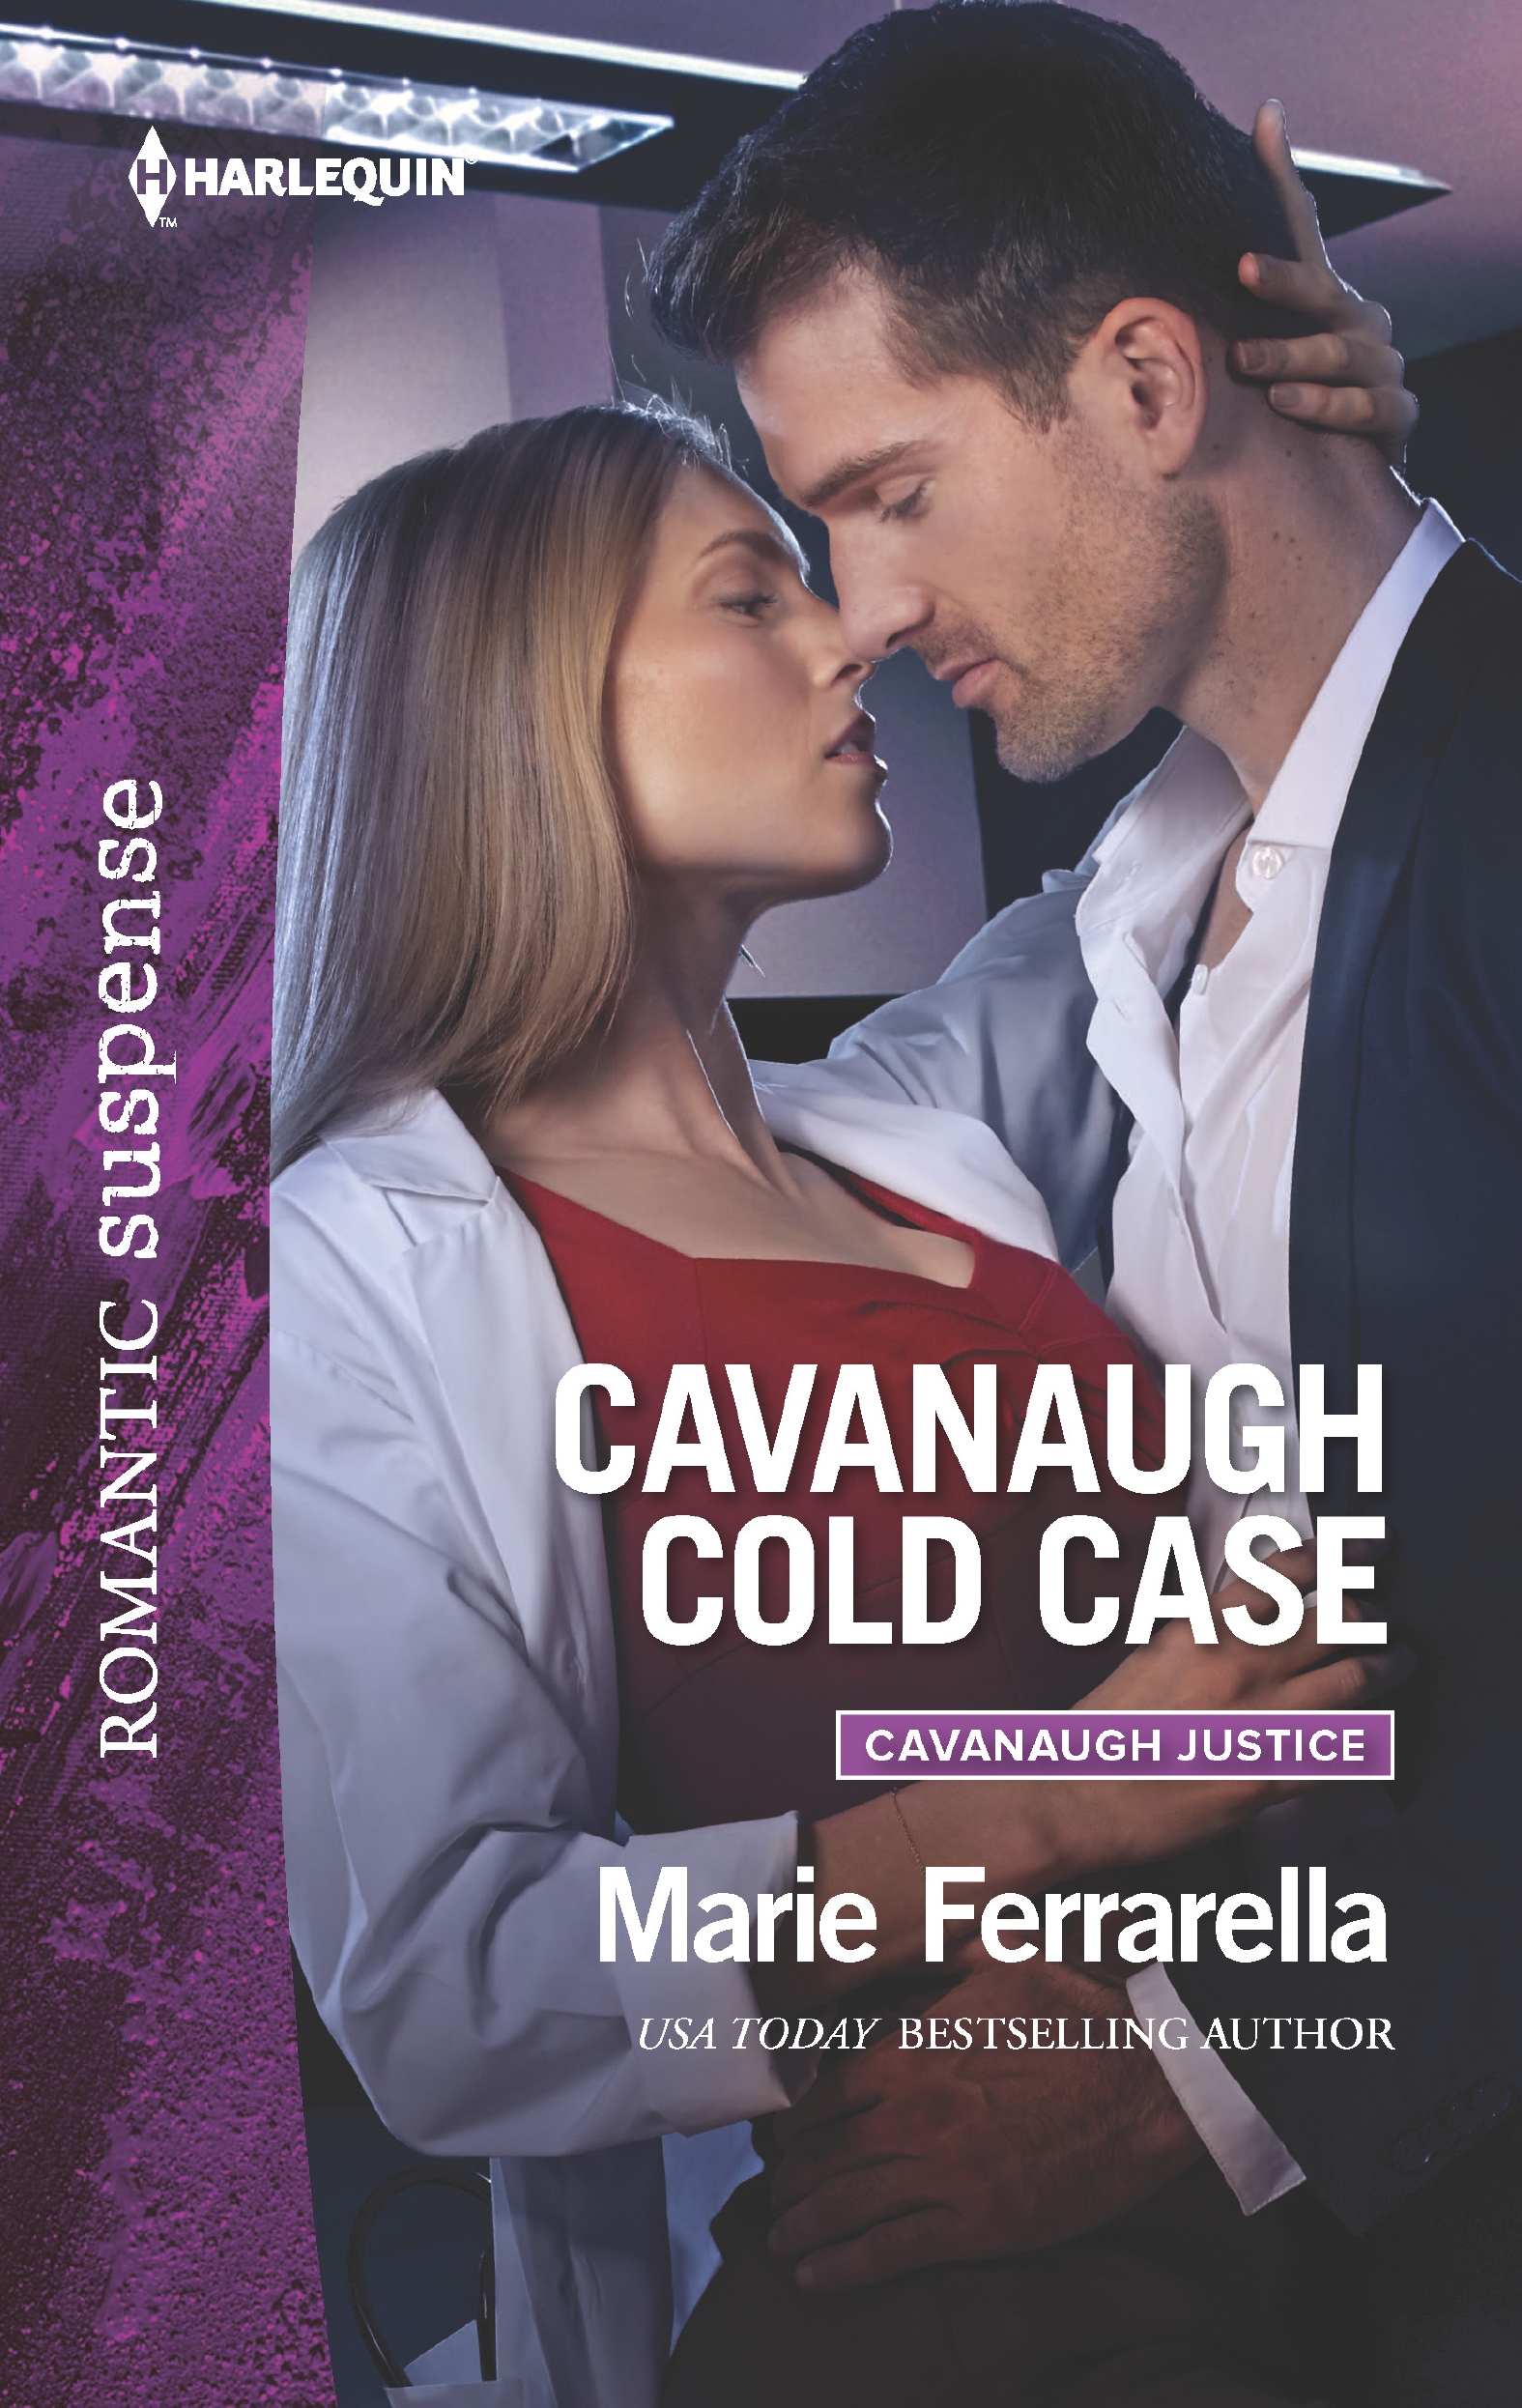 Cavanaugh Cold Case (2016) by Marie Ferrarella